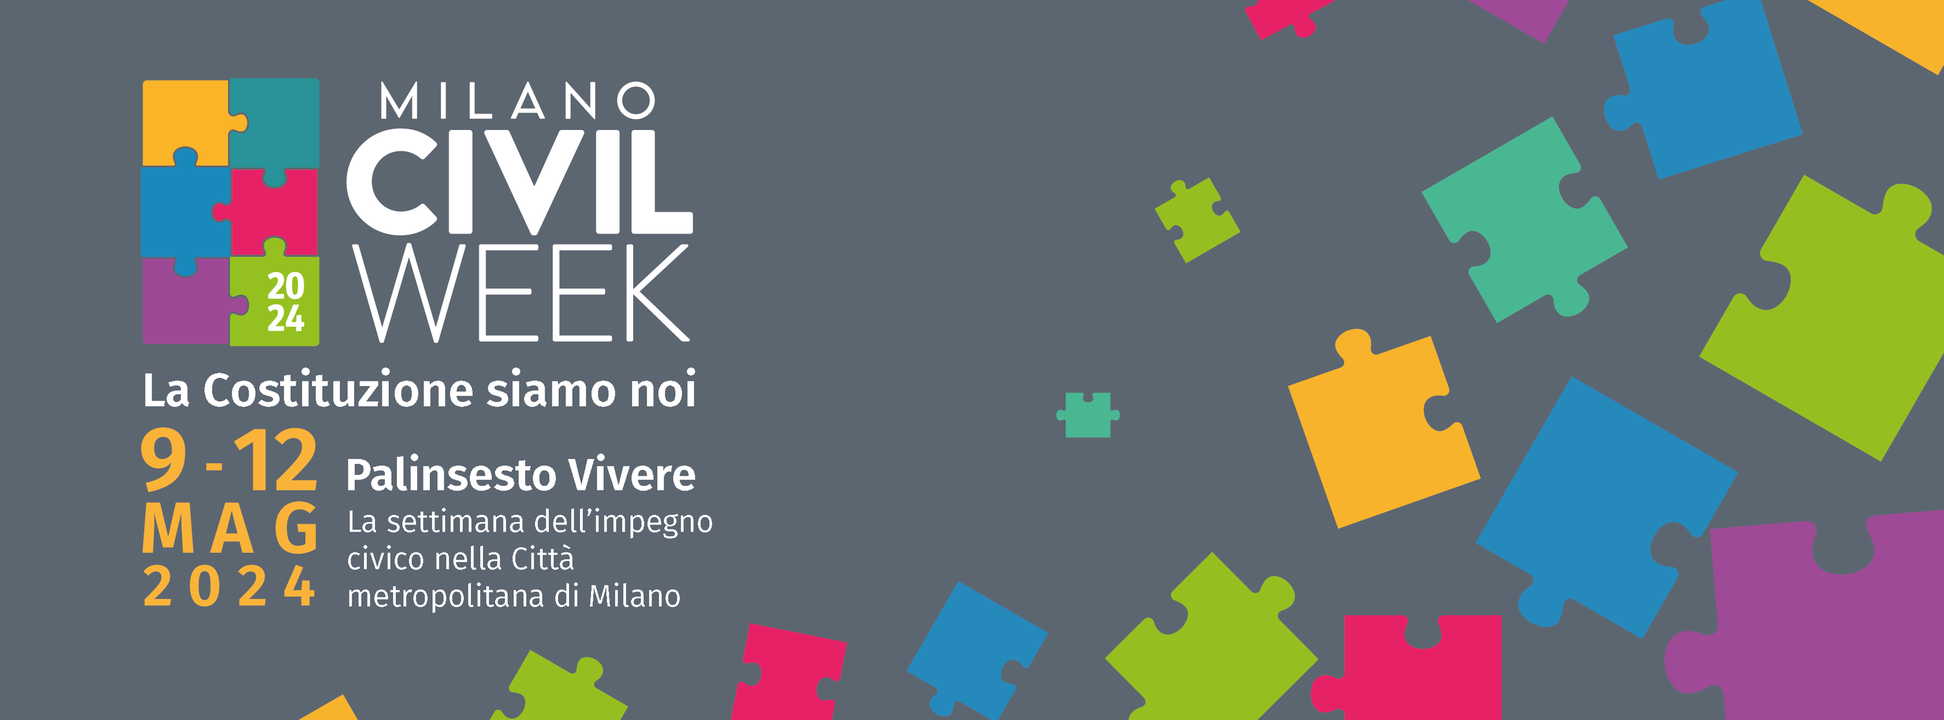 Milano Civil Week 2024, gli appuntamenti dedicati alla disabilità